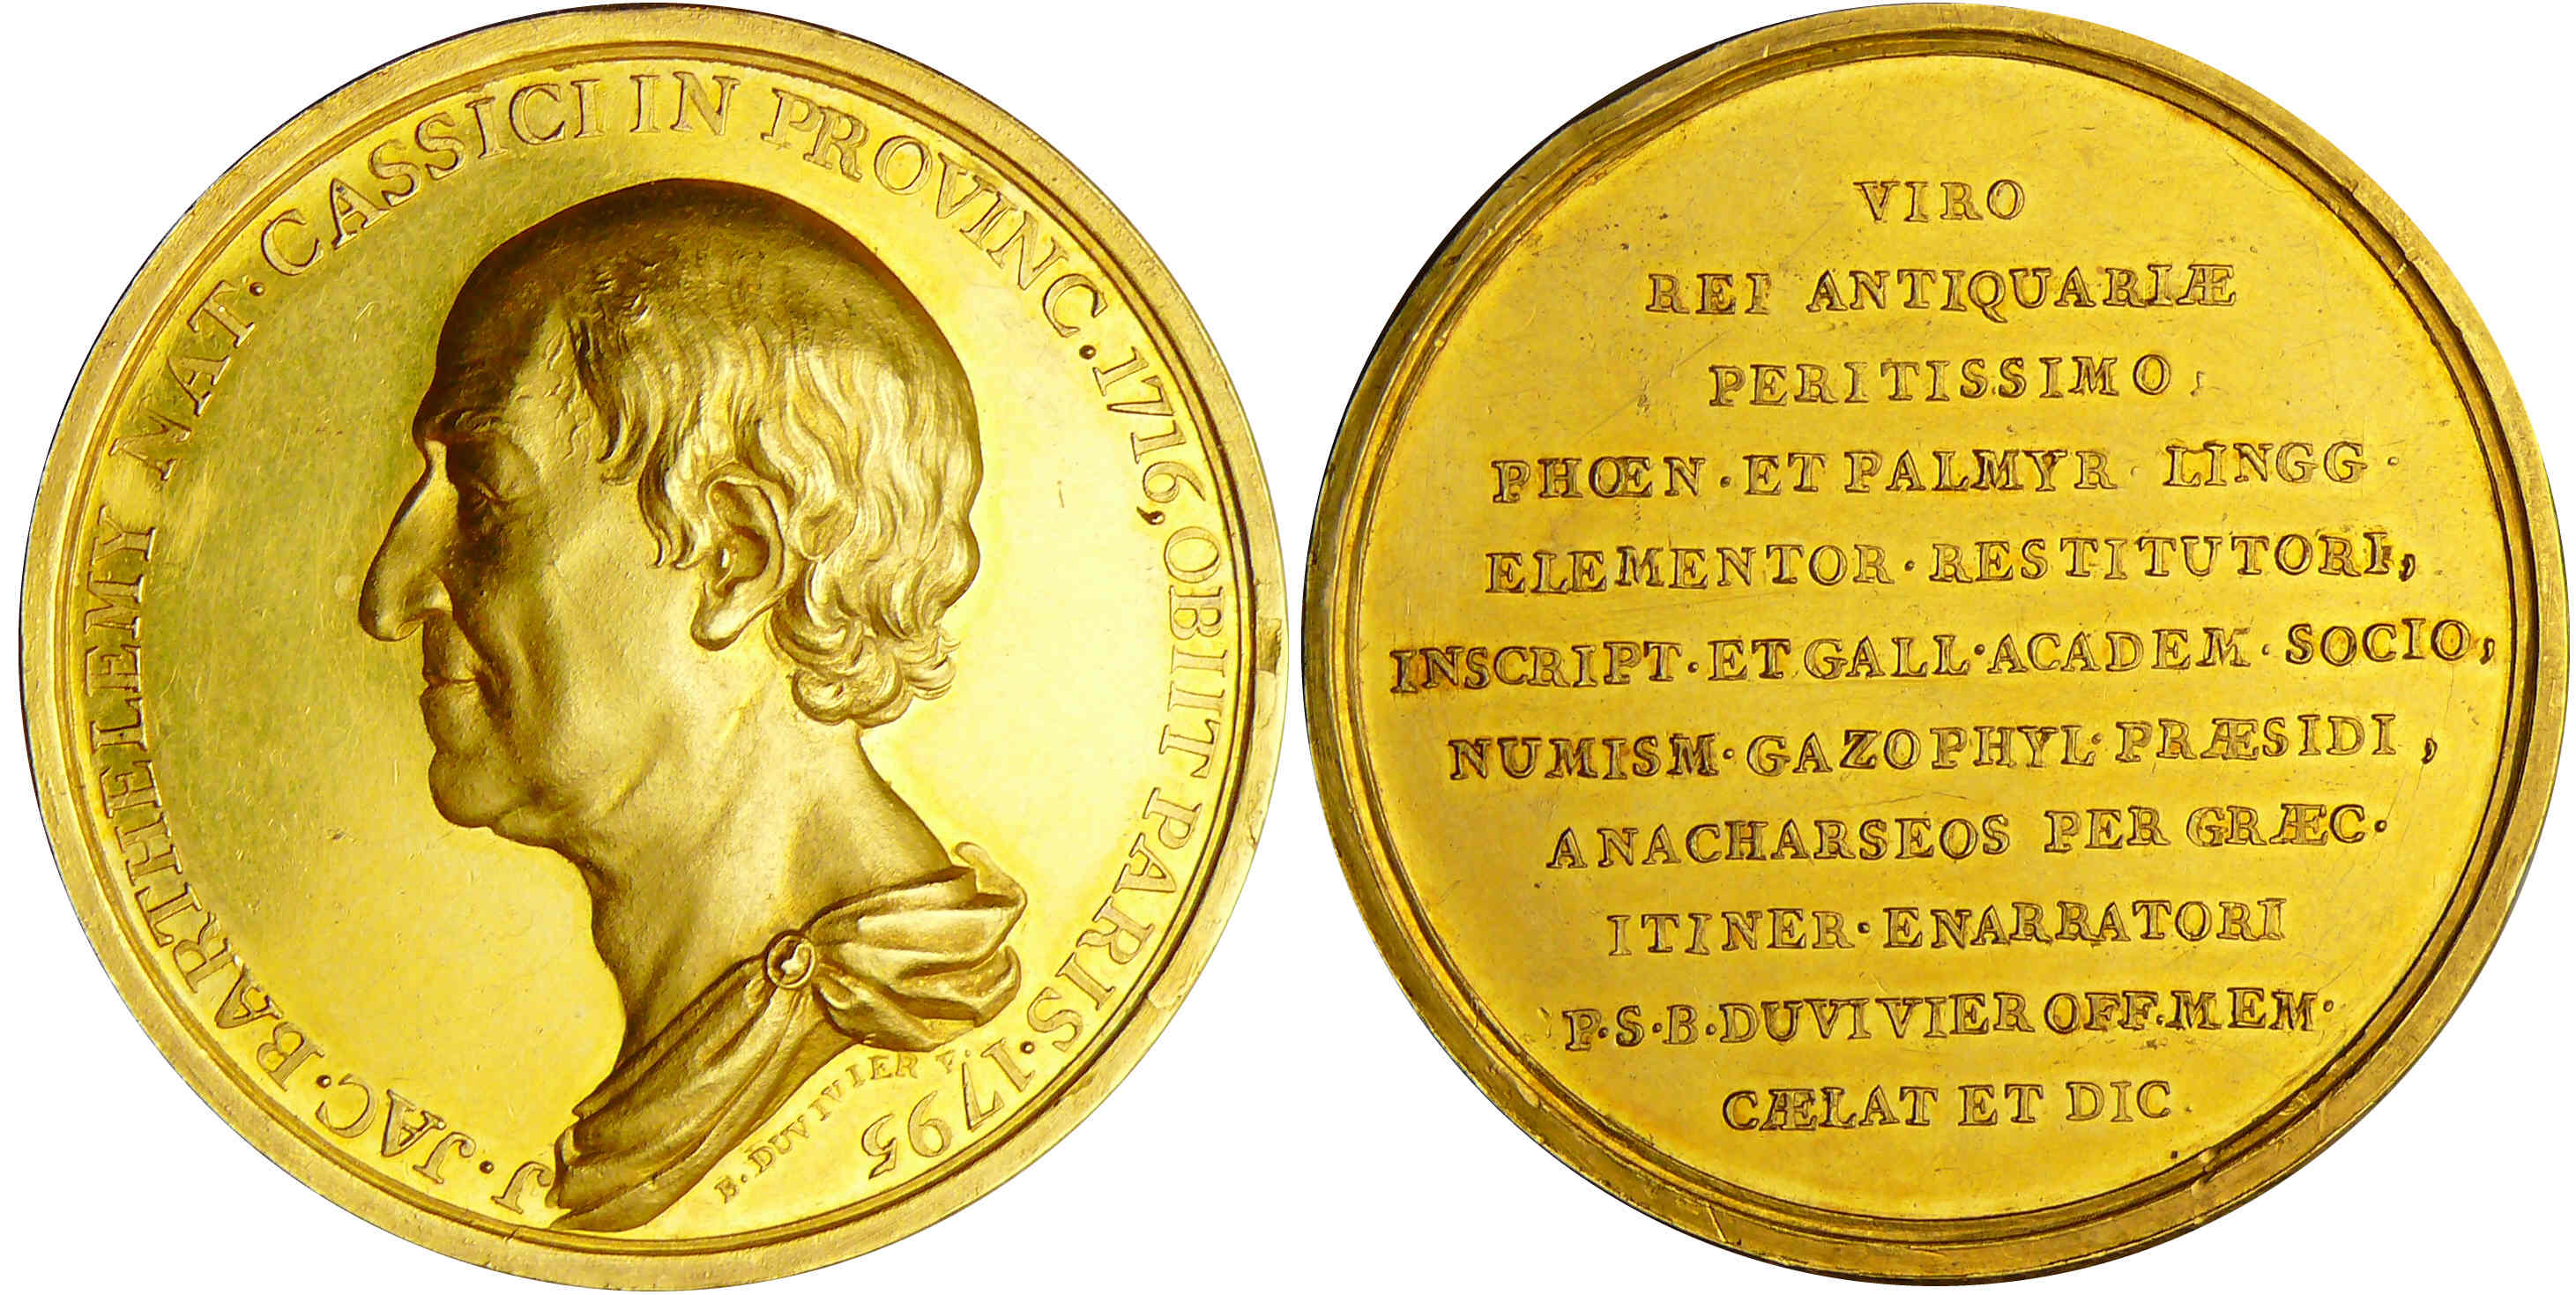 File:Barthélemy, Jean-Jacques médailles or.jpg